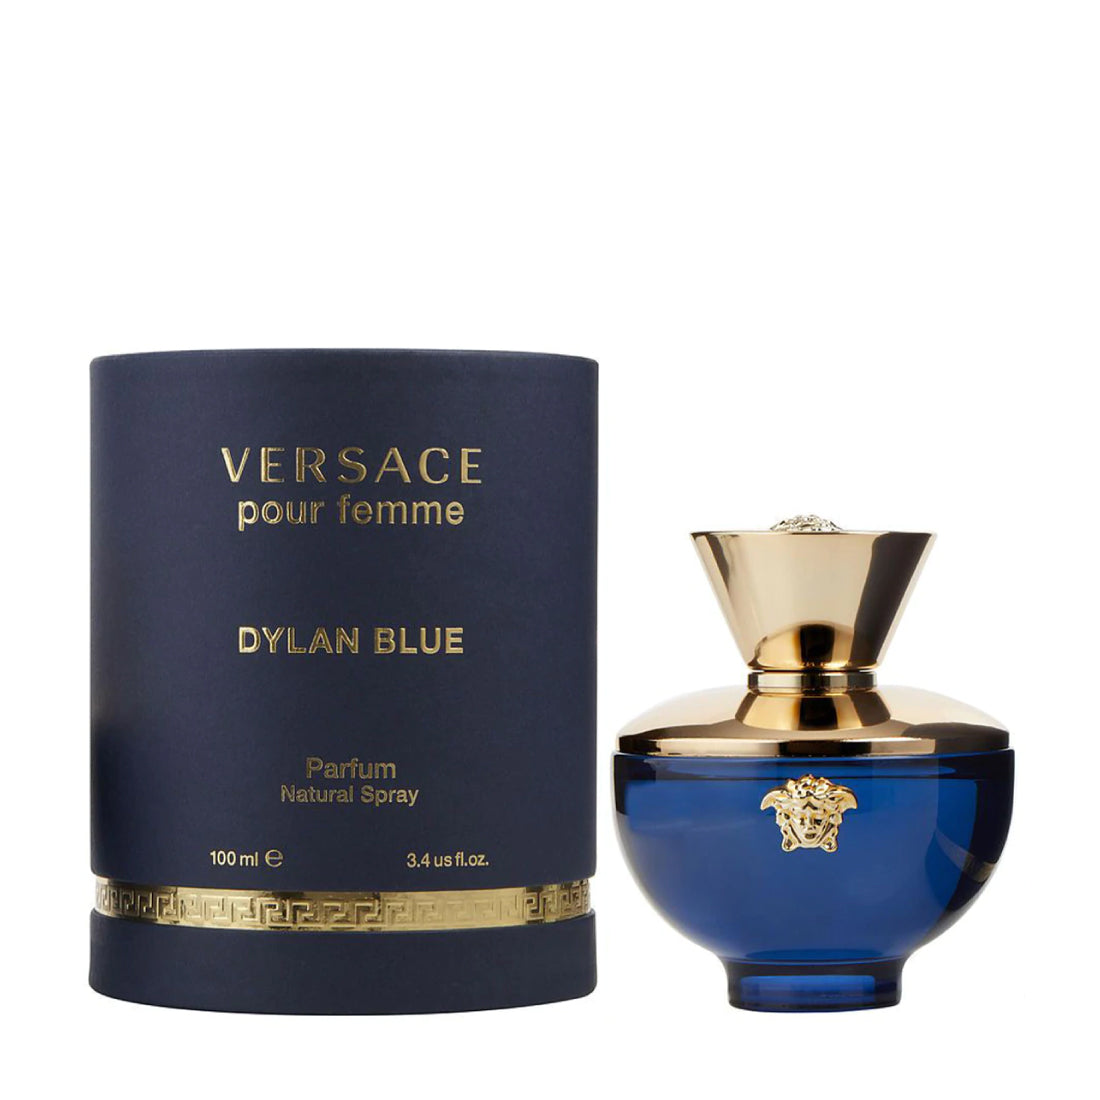 Vérsace Dylan Blue Pour Femme For Women Eau de Parfum Spray 3.4 OZ. 100 ml